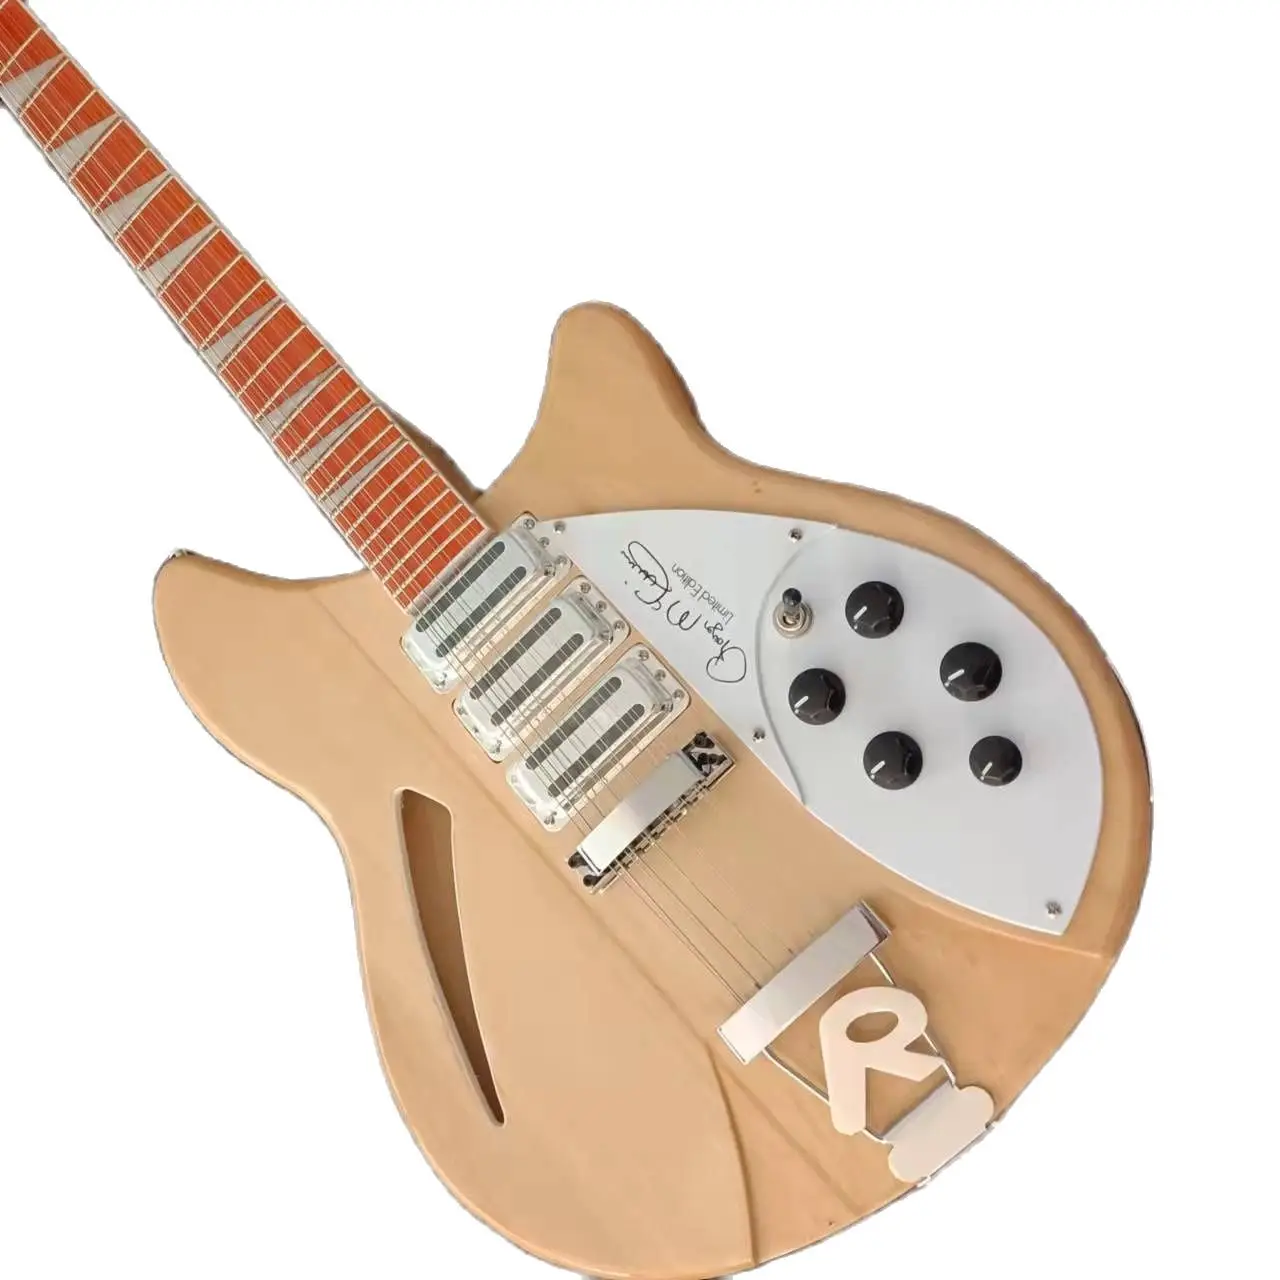 

Модель 370 электрогитара с естественной деревянная 12-струнная Ric-гитара, 24 лада, полупустотелый корпус, 3 тостера, пикапа Рика